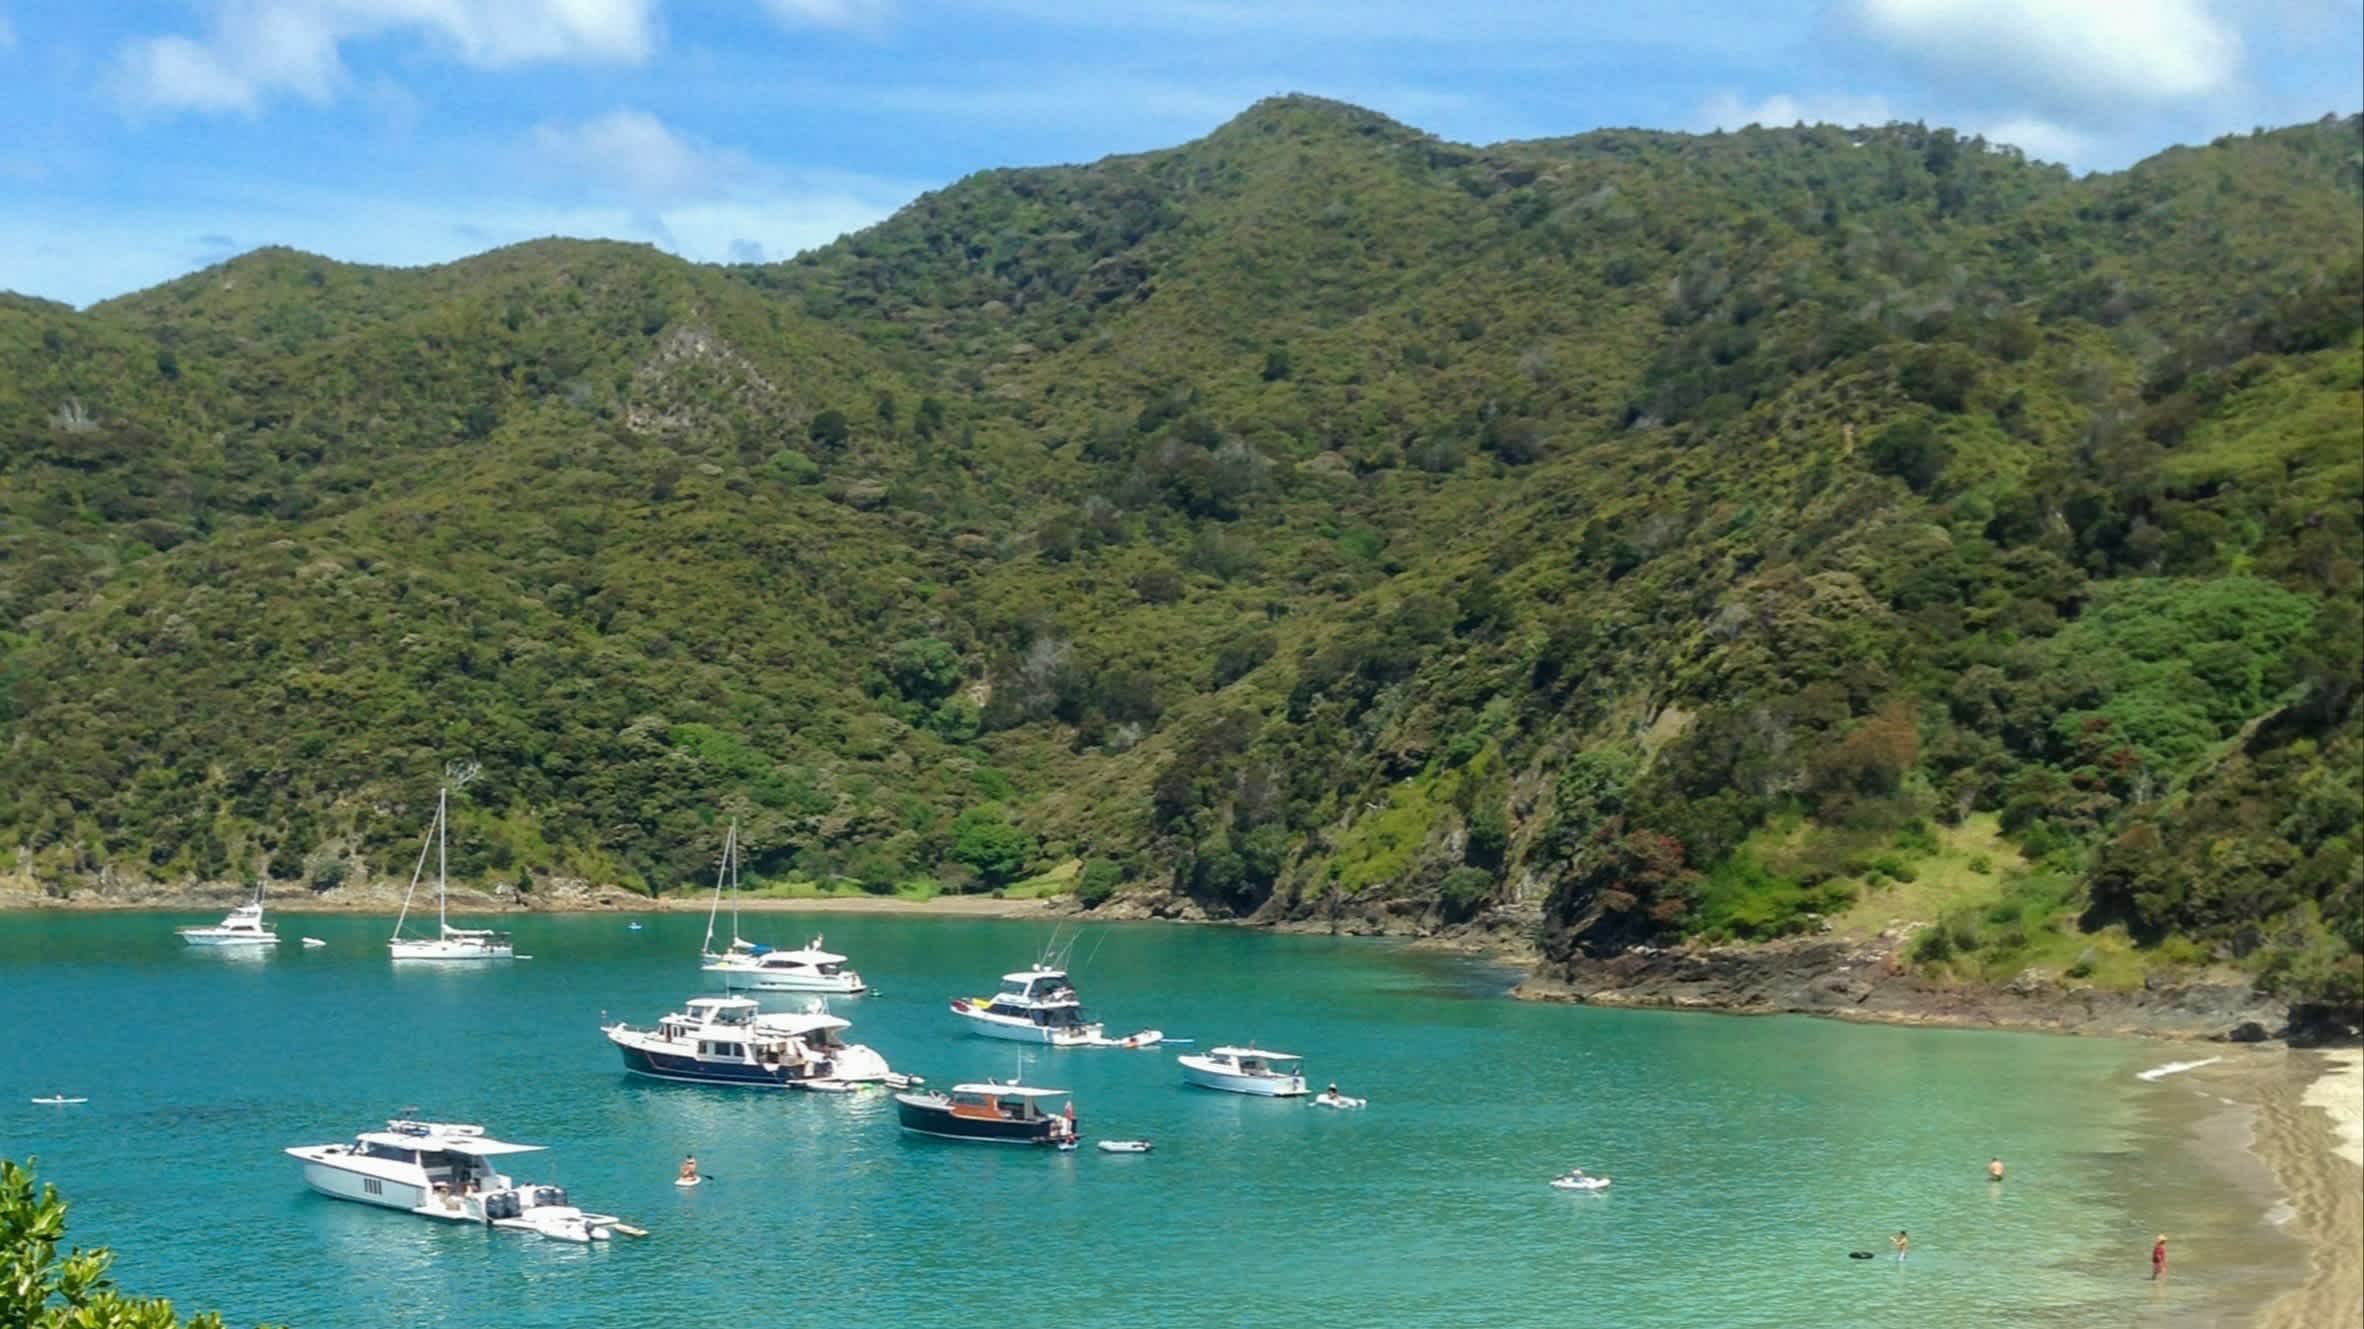 Boats in Oke Bay, Bay of Islands, New Zealand

